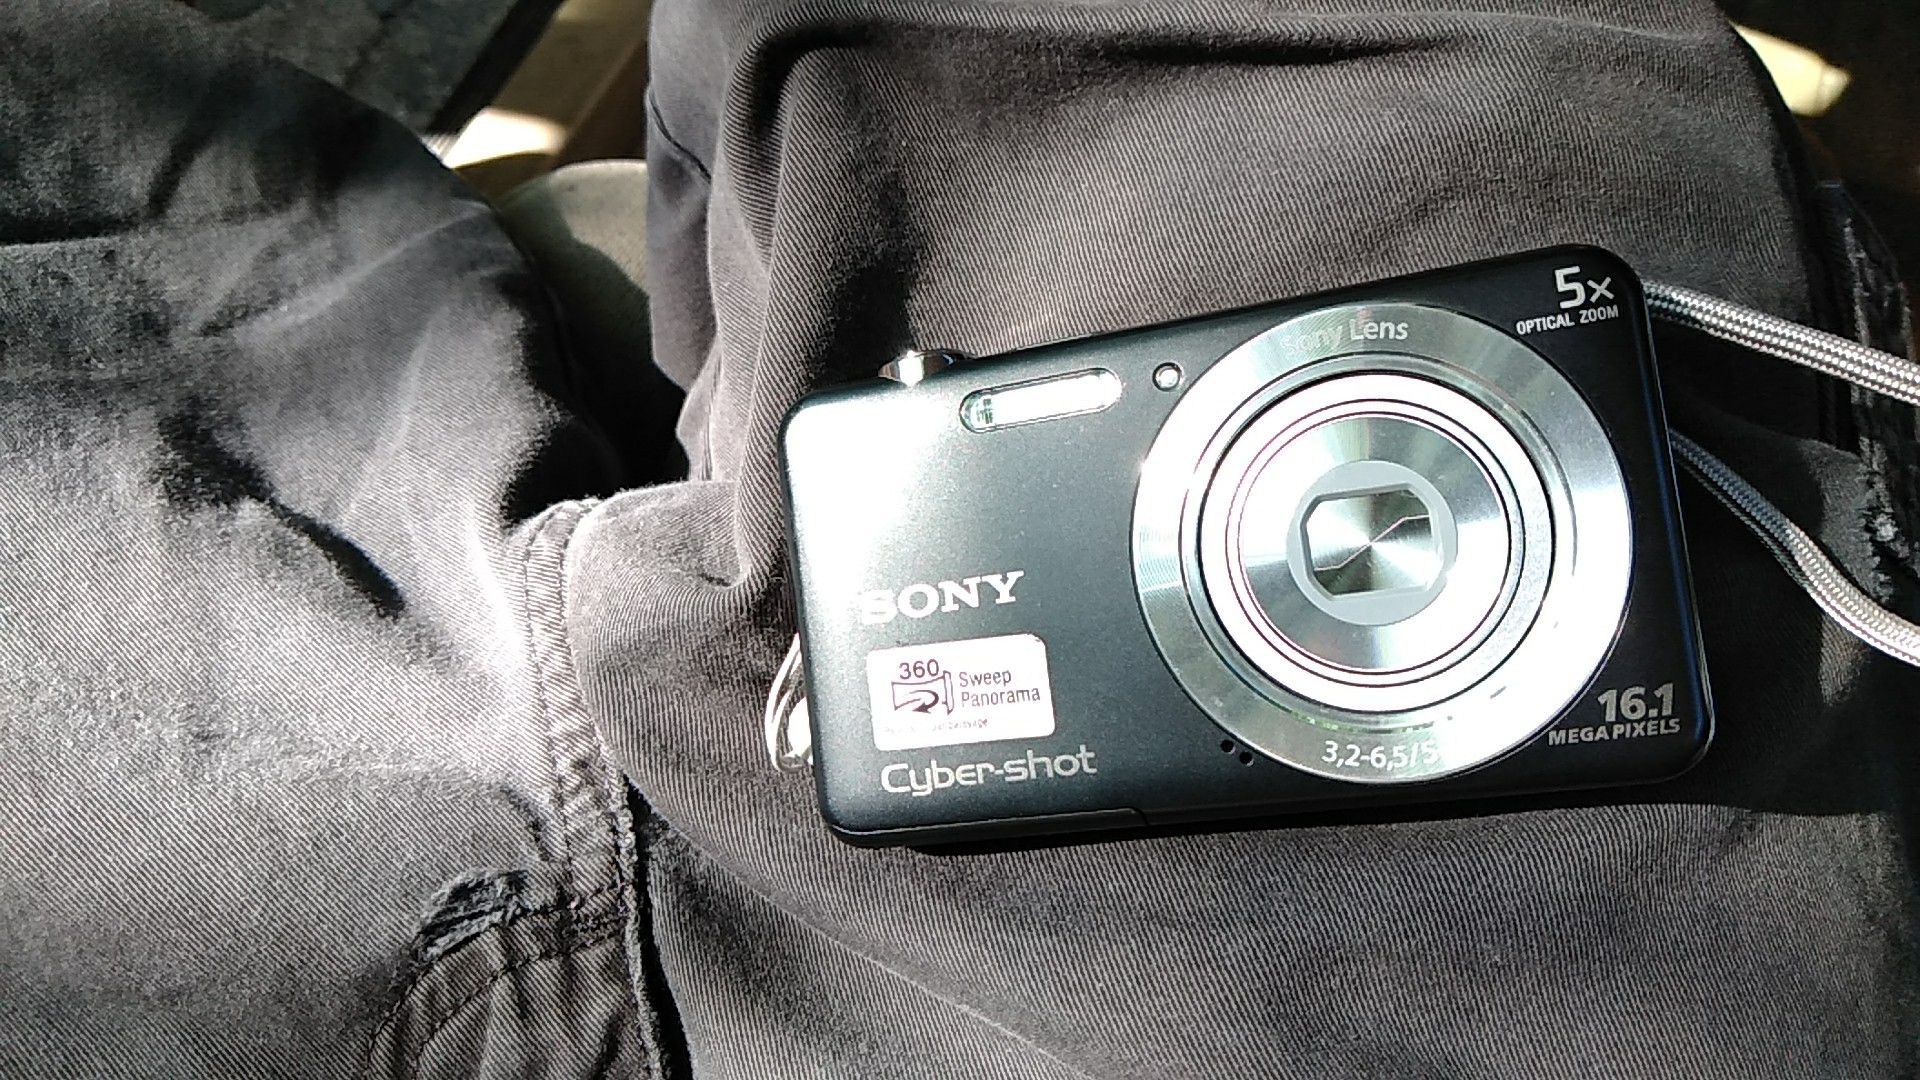 Sony Cyber Shot DSC-W710 Camera